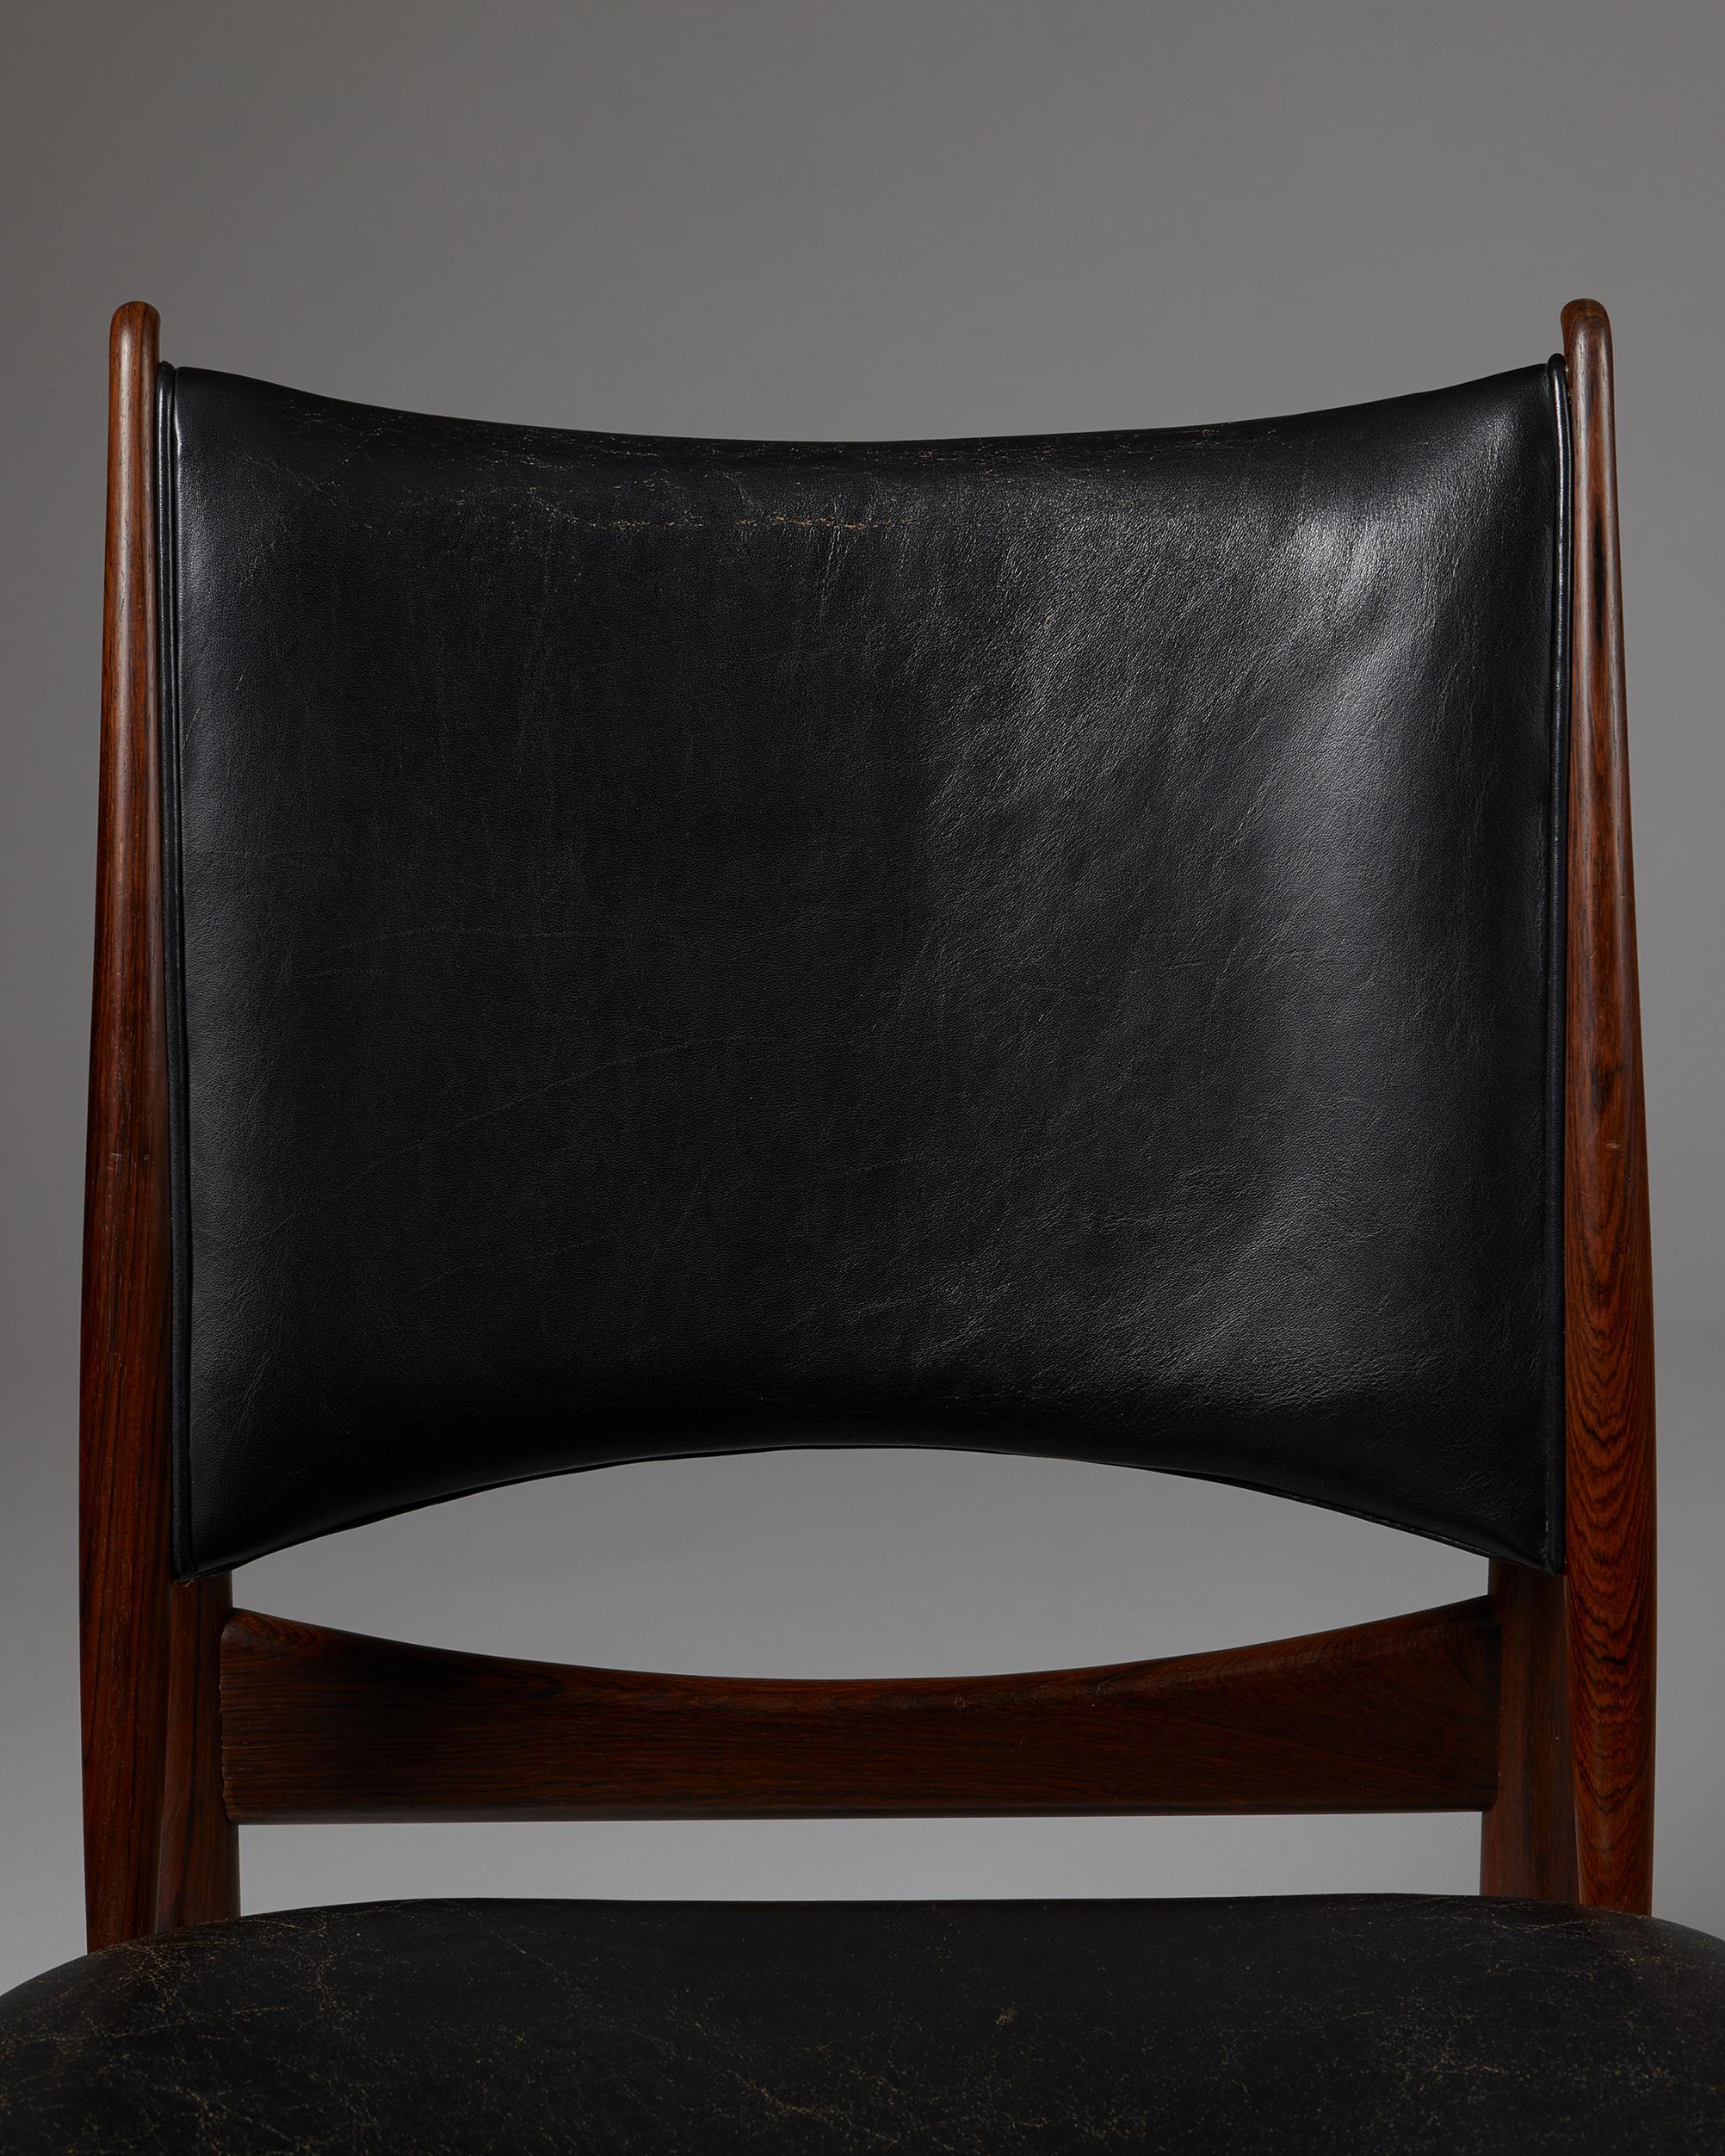 Leather Chair 'Egyptian' designed by Finn Juhl for Niels Vodder, Denmark, 1949 For Sale